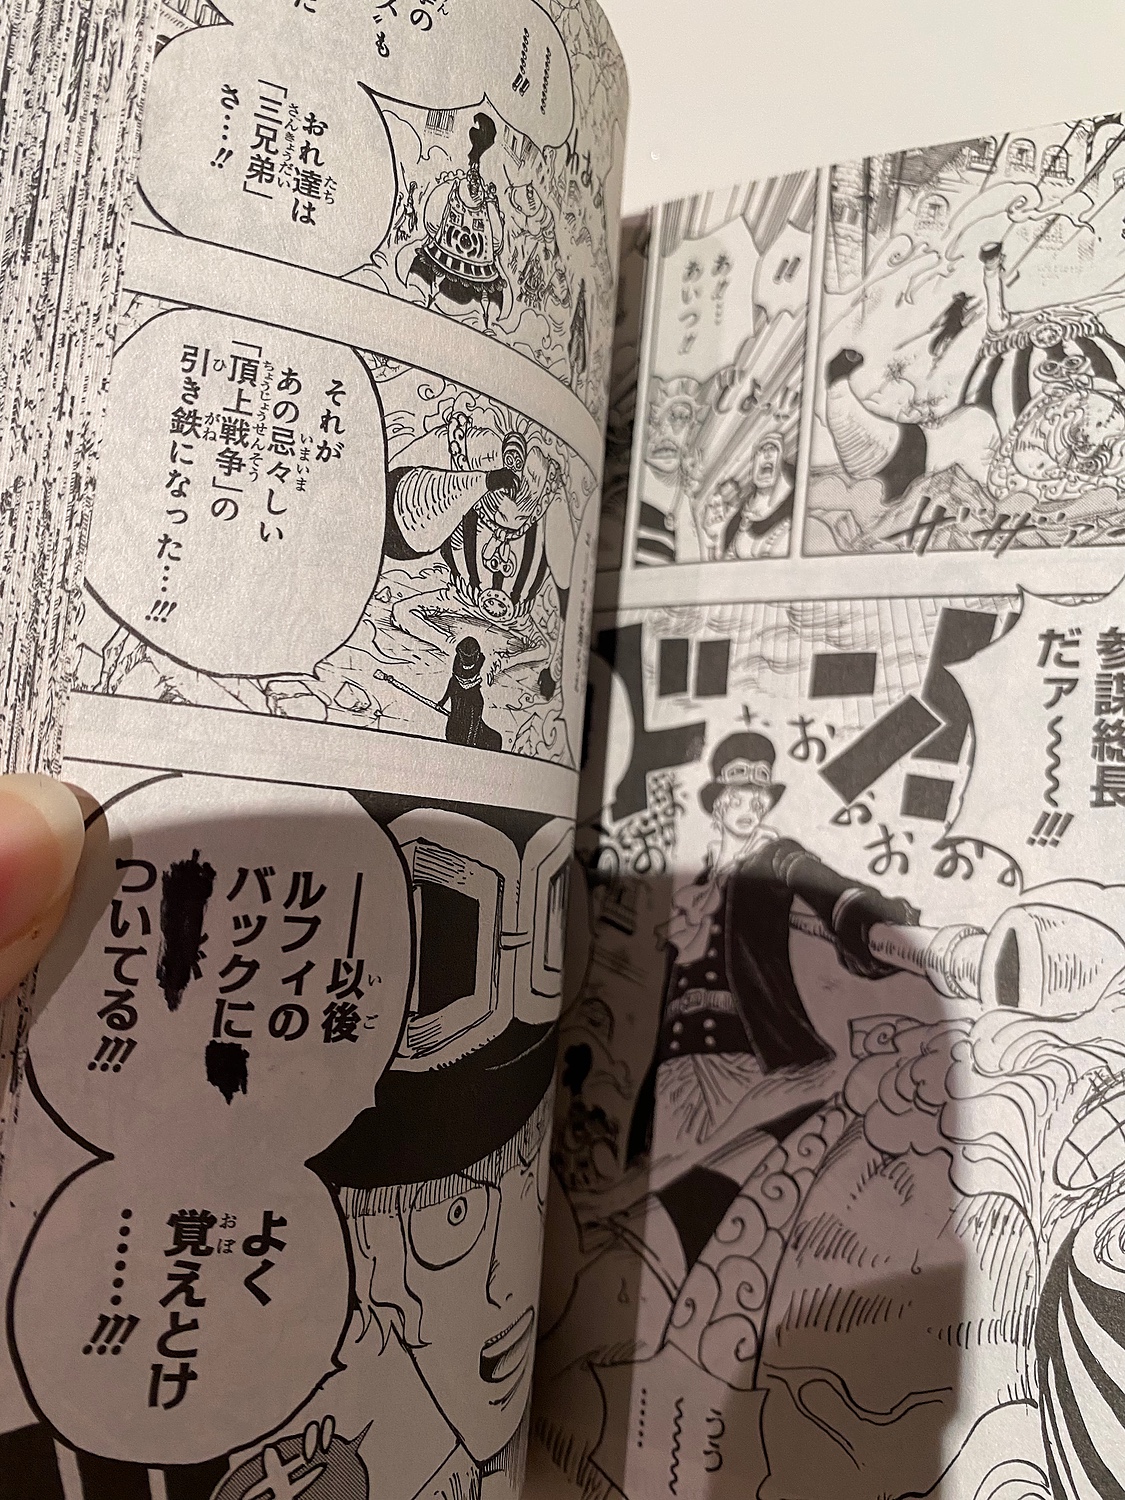 ONE PIECE ワンピース 全巻 1〜104巻 漫画 全巻セット 漫画 全巻セット